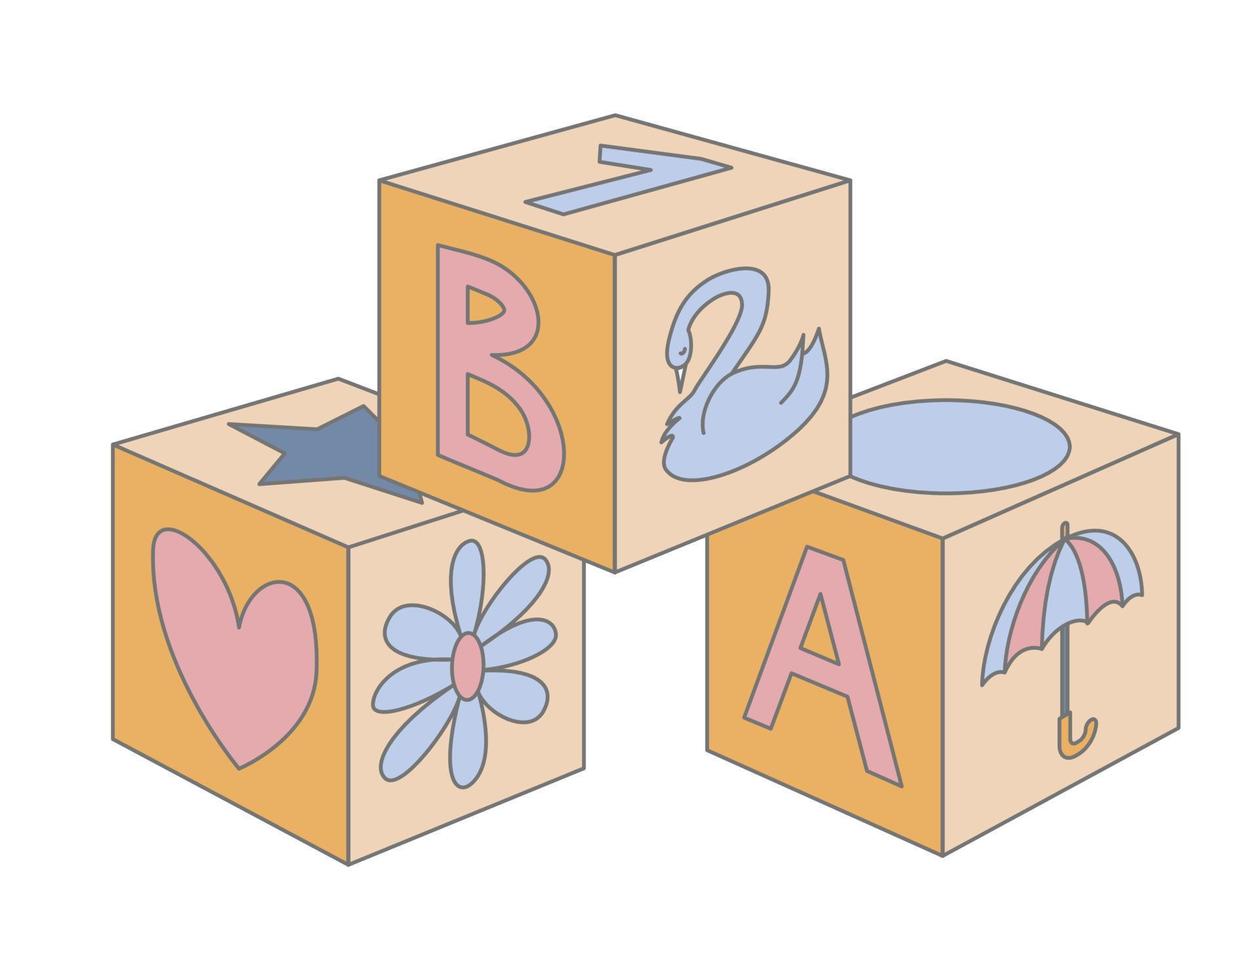 blok baby houten speelgoed- voor gebouw. kinderachtig kubussen in schattig pastel blauw en roze kleuren voor jongen of meisje. vector illustratie van kind bakstenen met brieven